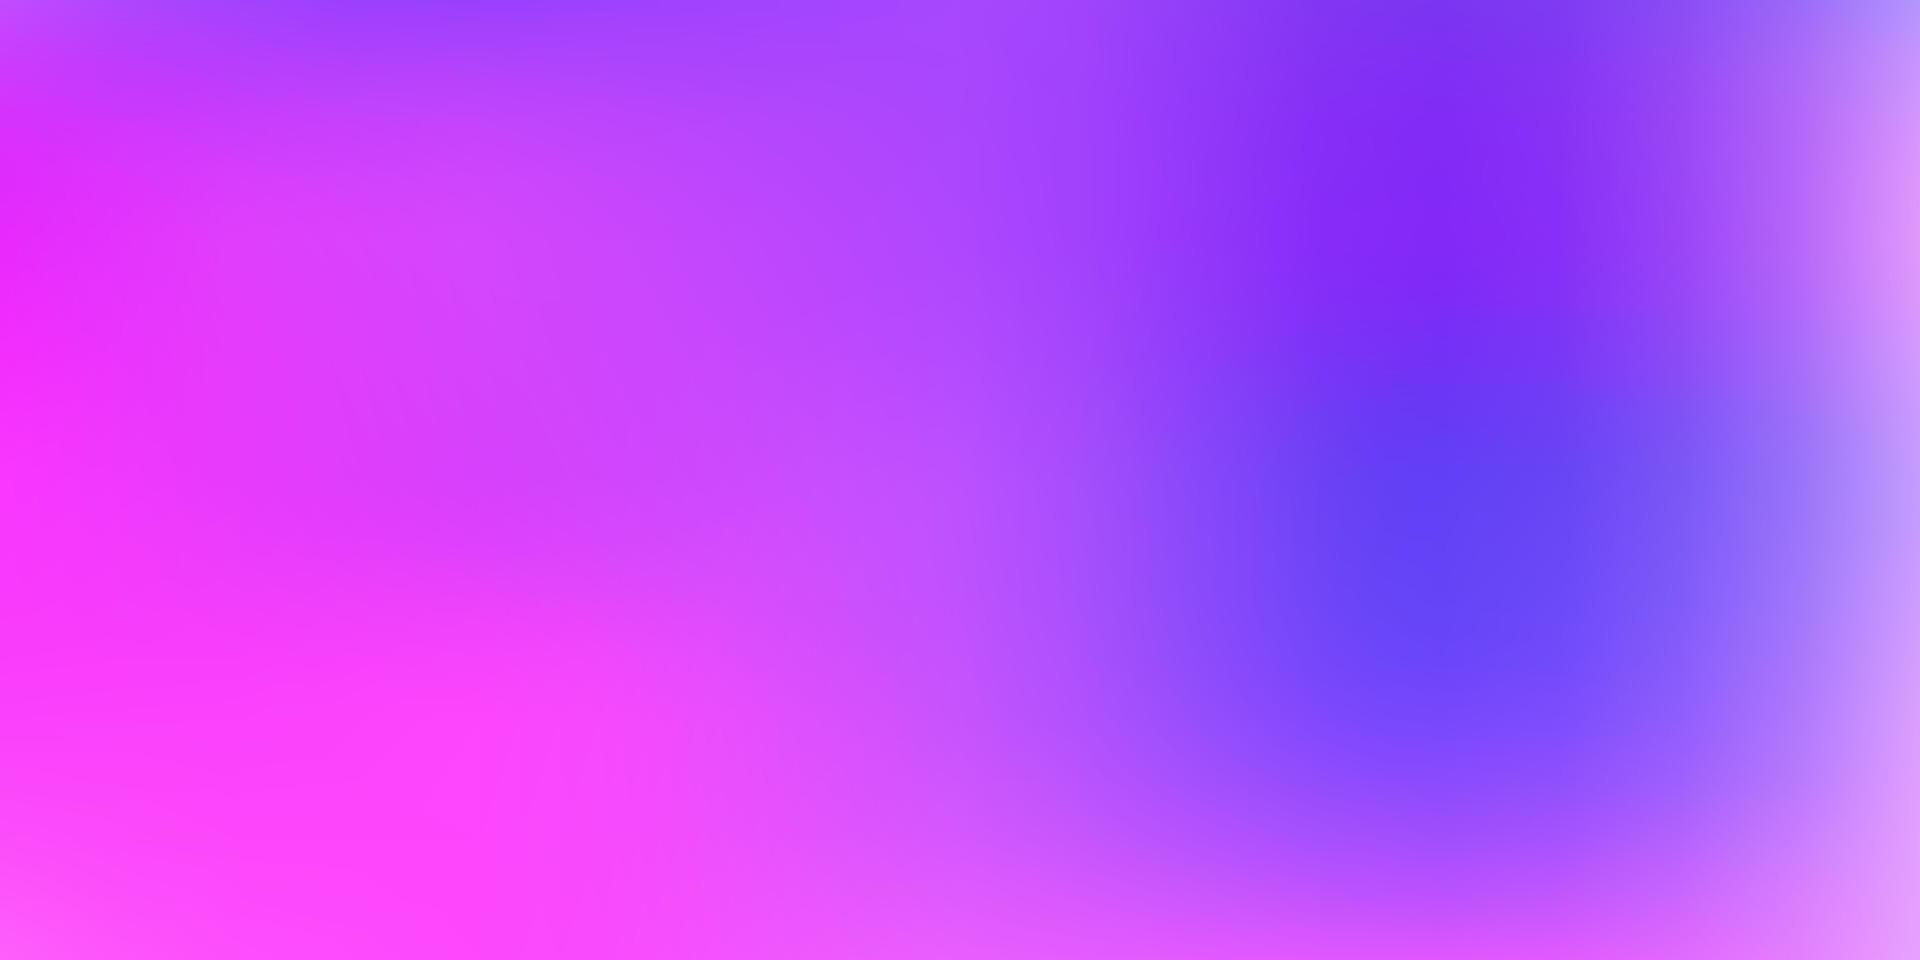 layout di sfocatura astratta vettoriale viola chiaro, rosa.